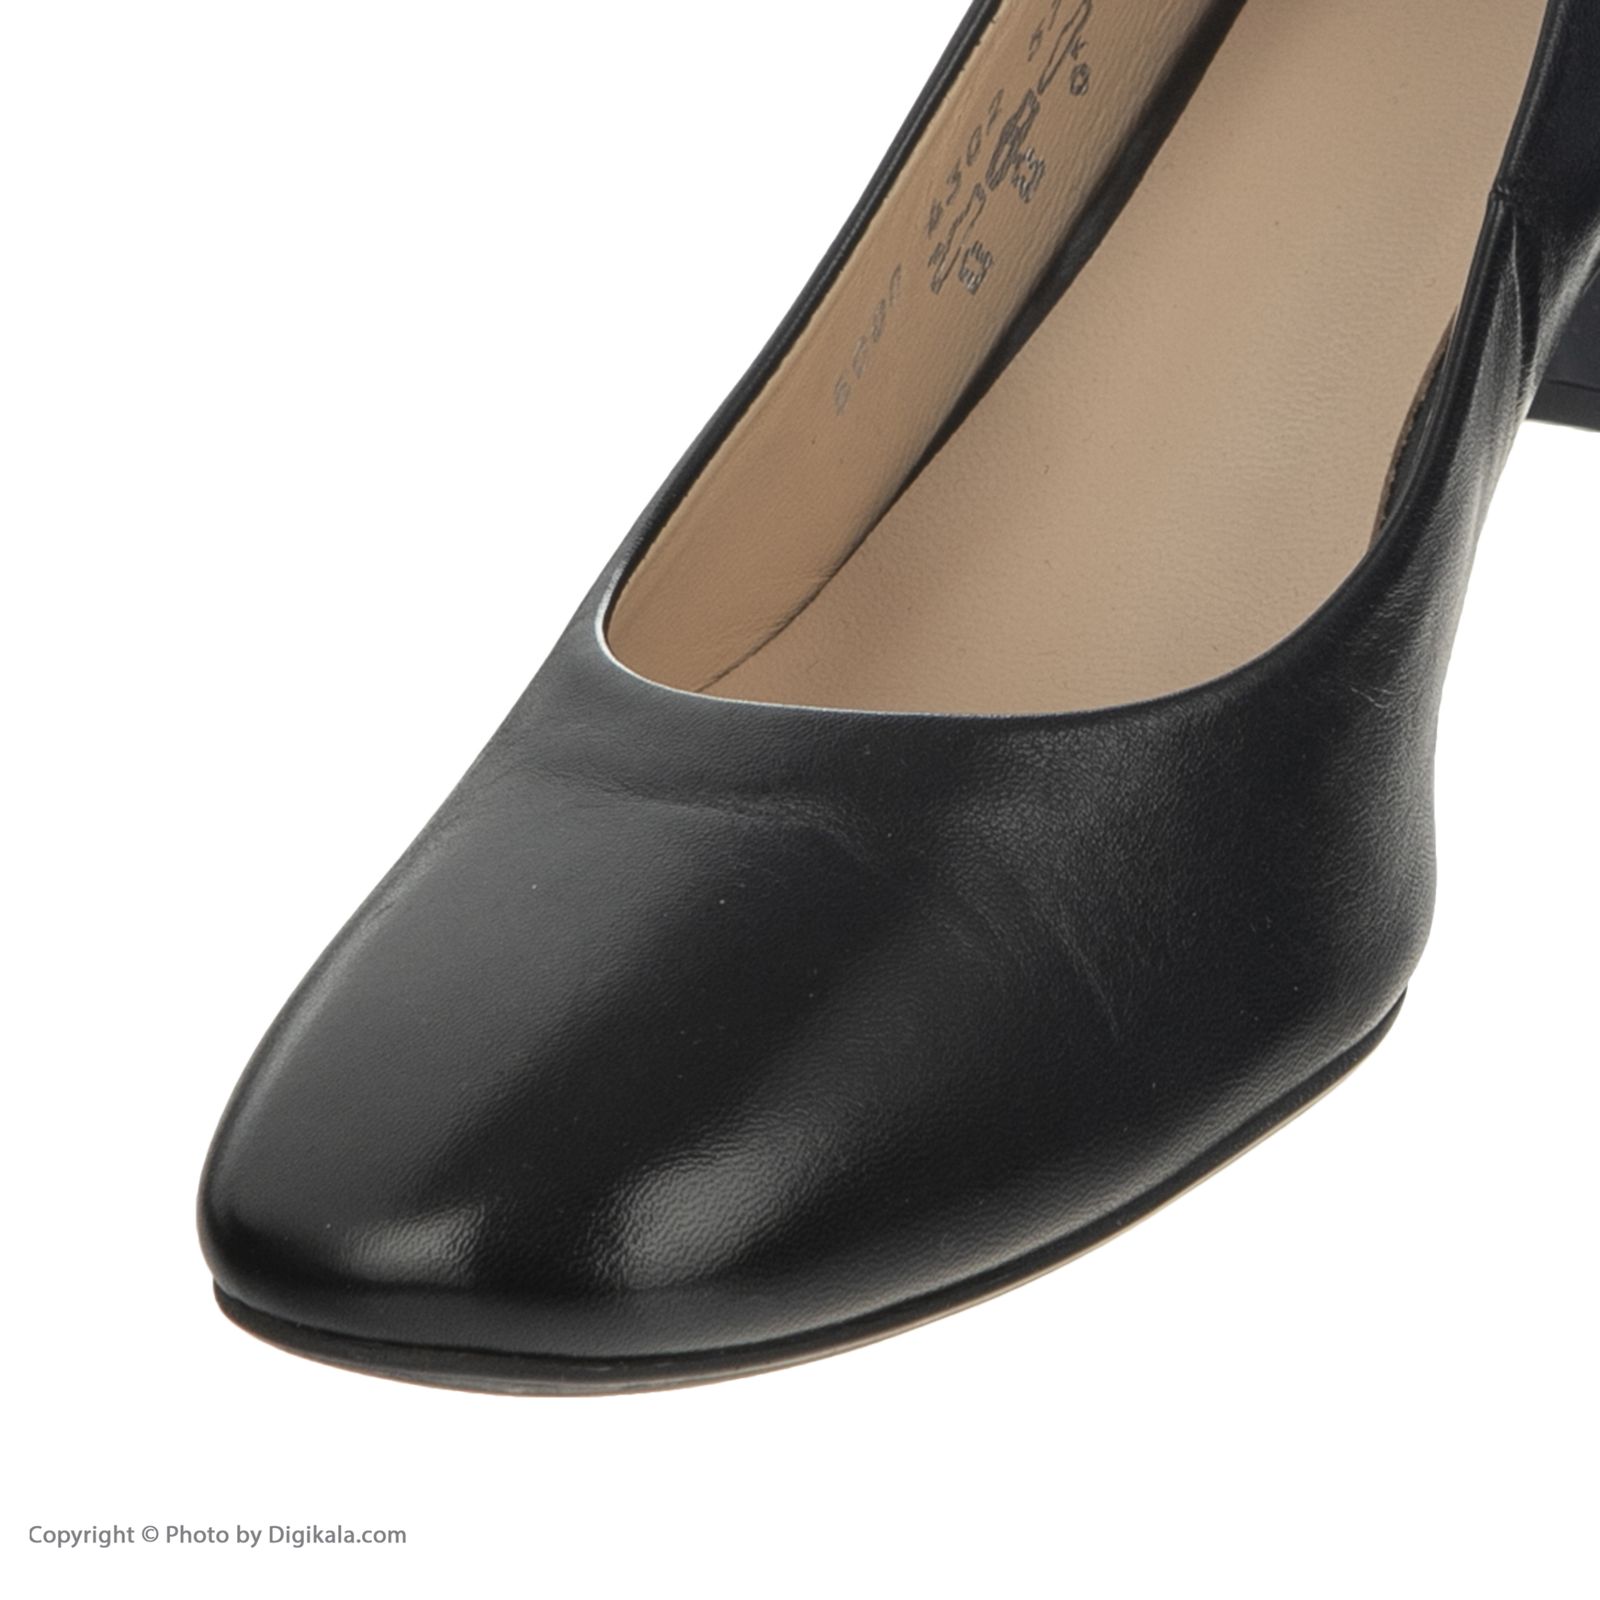 کفش زنانه هوگل مدل 0-185000-0100 - مشکی - 6